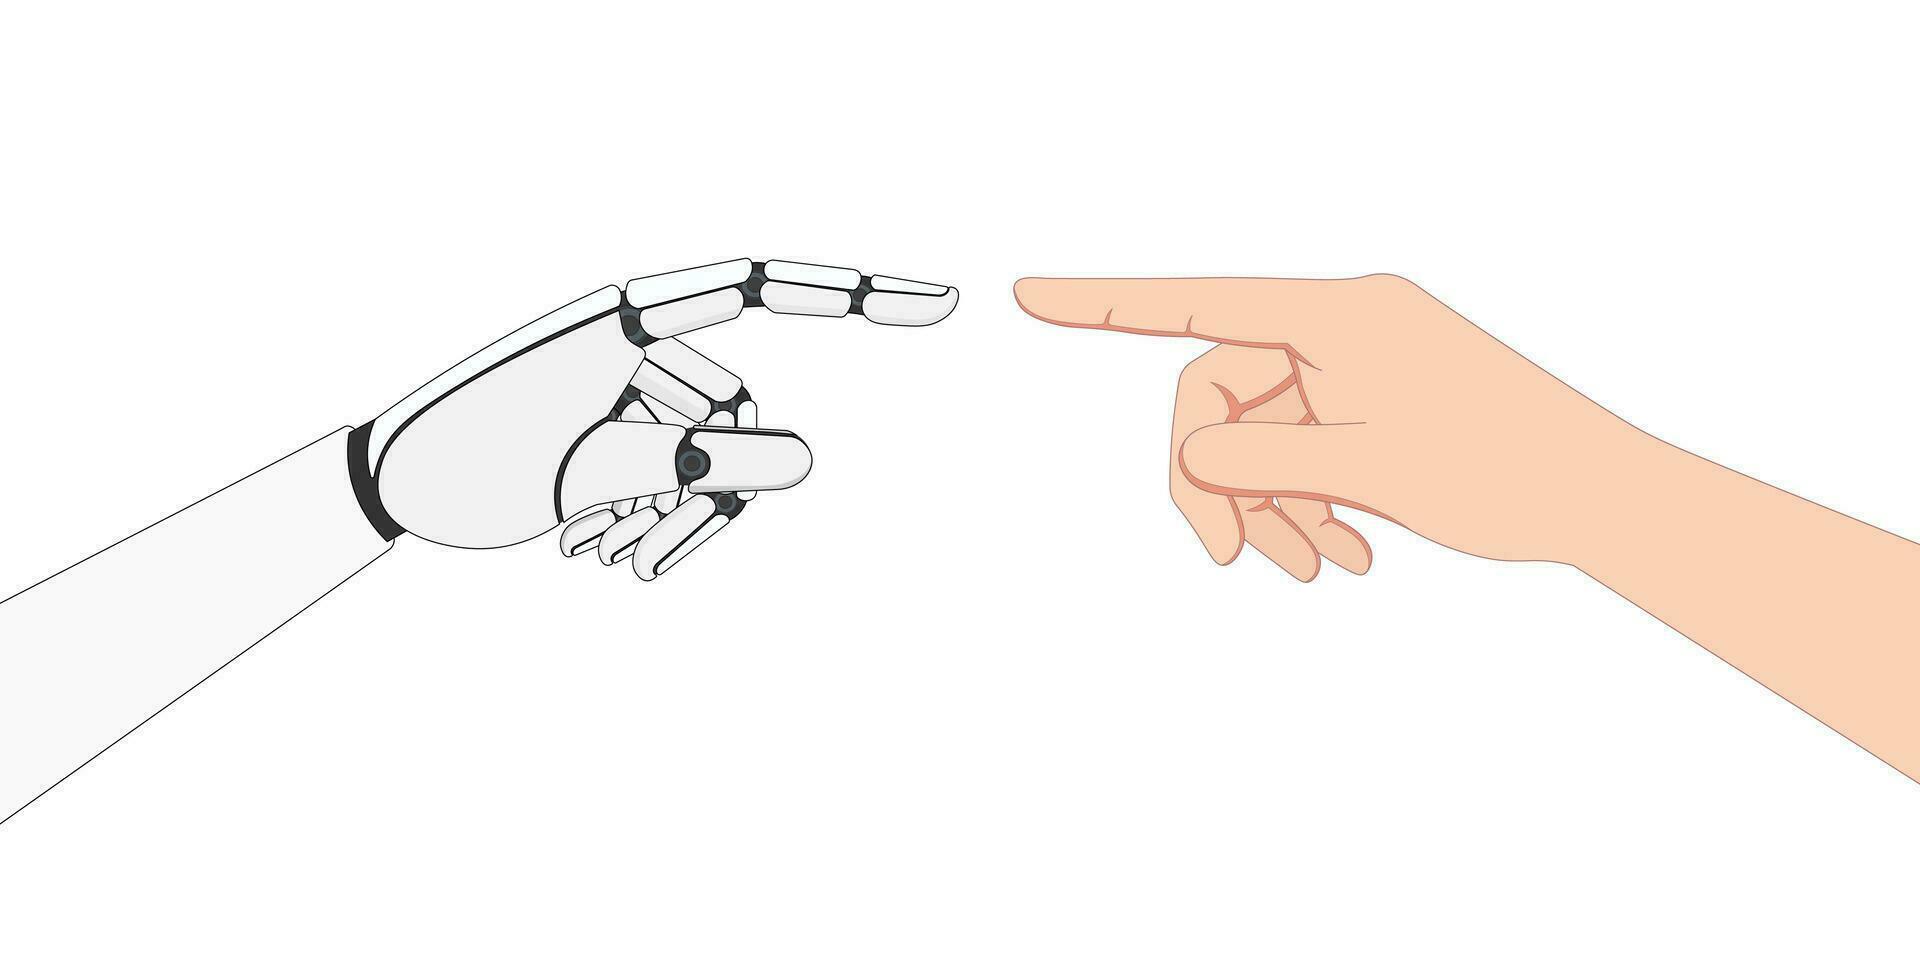 begrepp av artificiell intelligens teknologi samarbete med en affärsman, robot index finger rörande mänsklig index finger, ai robot och en mänsklig hand, person använder sig av ai teknik, vektor illustration.